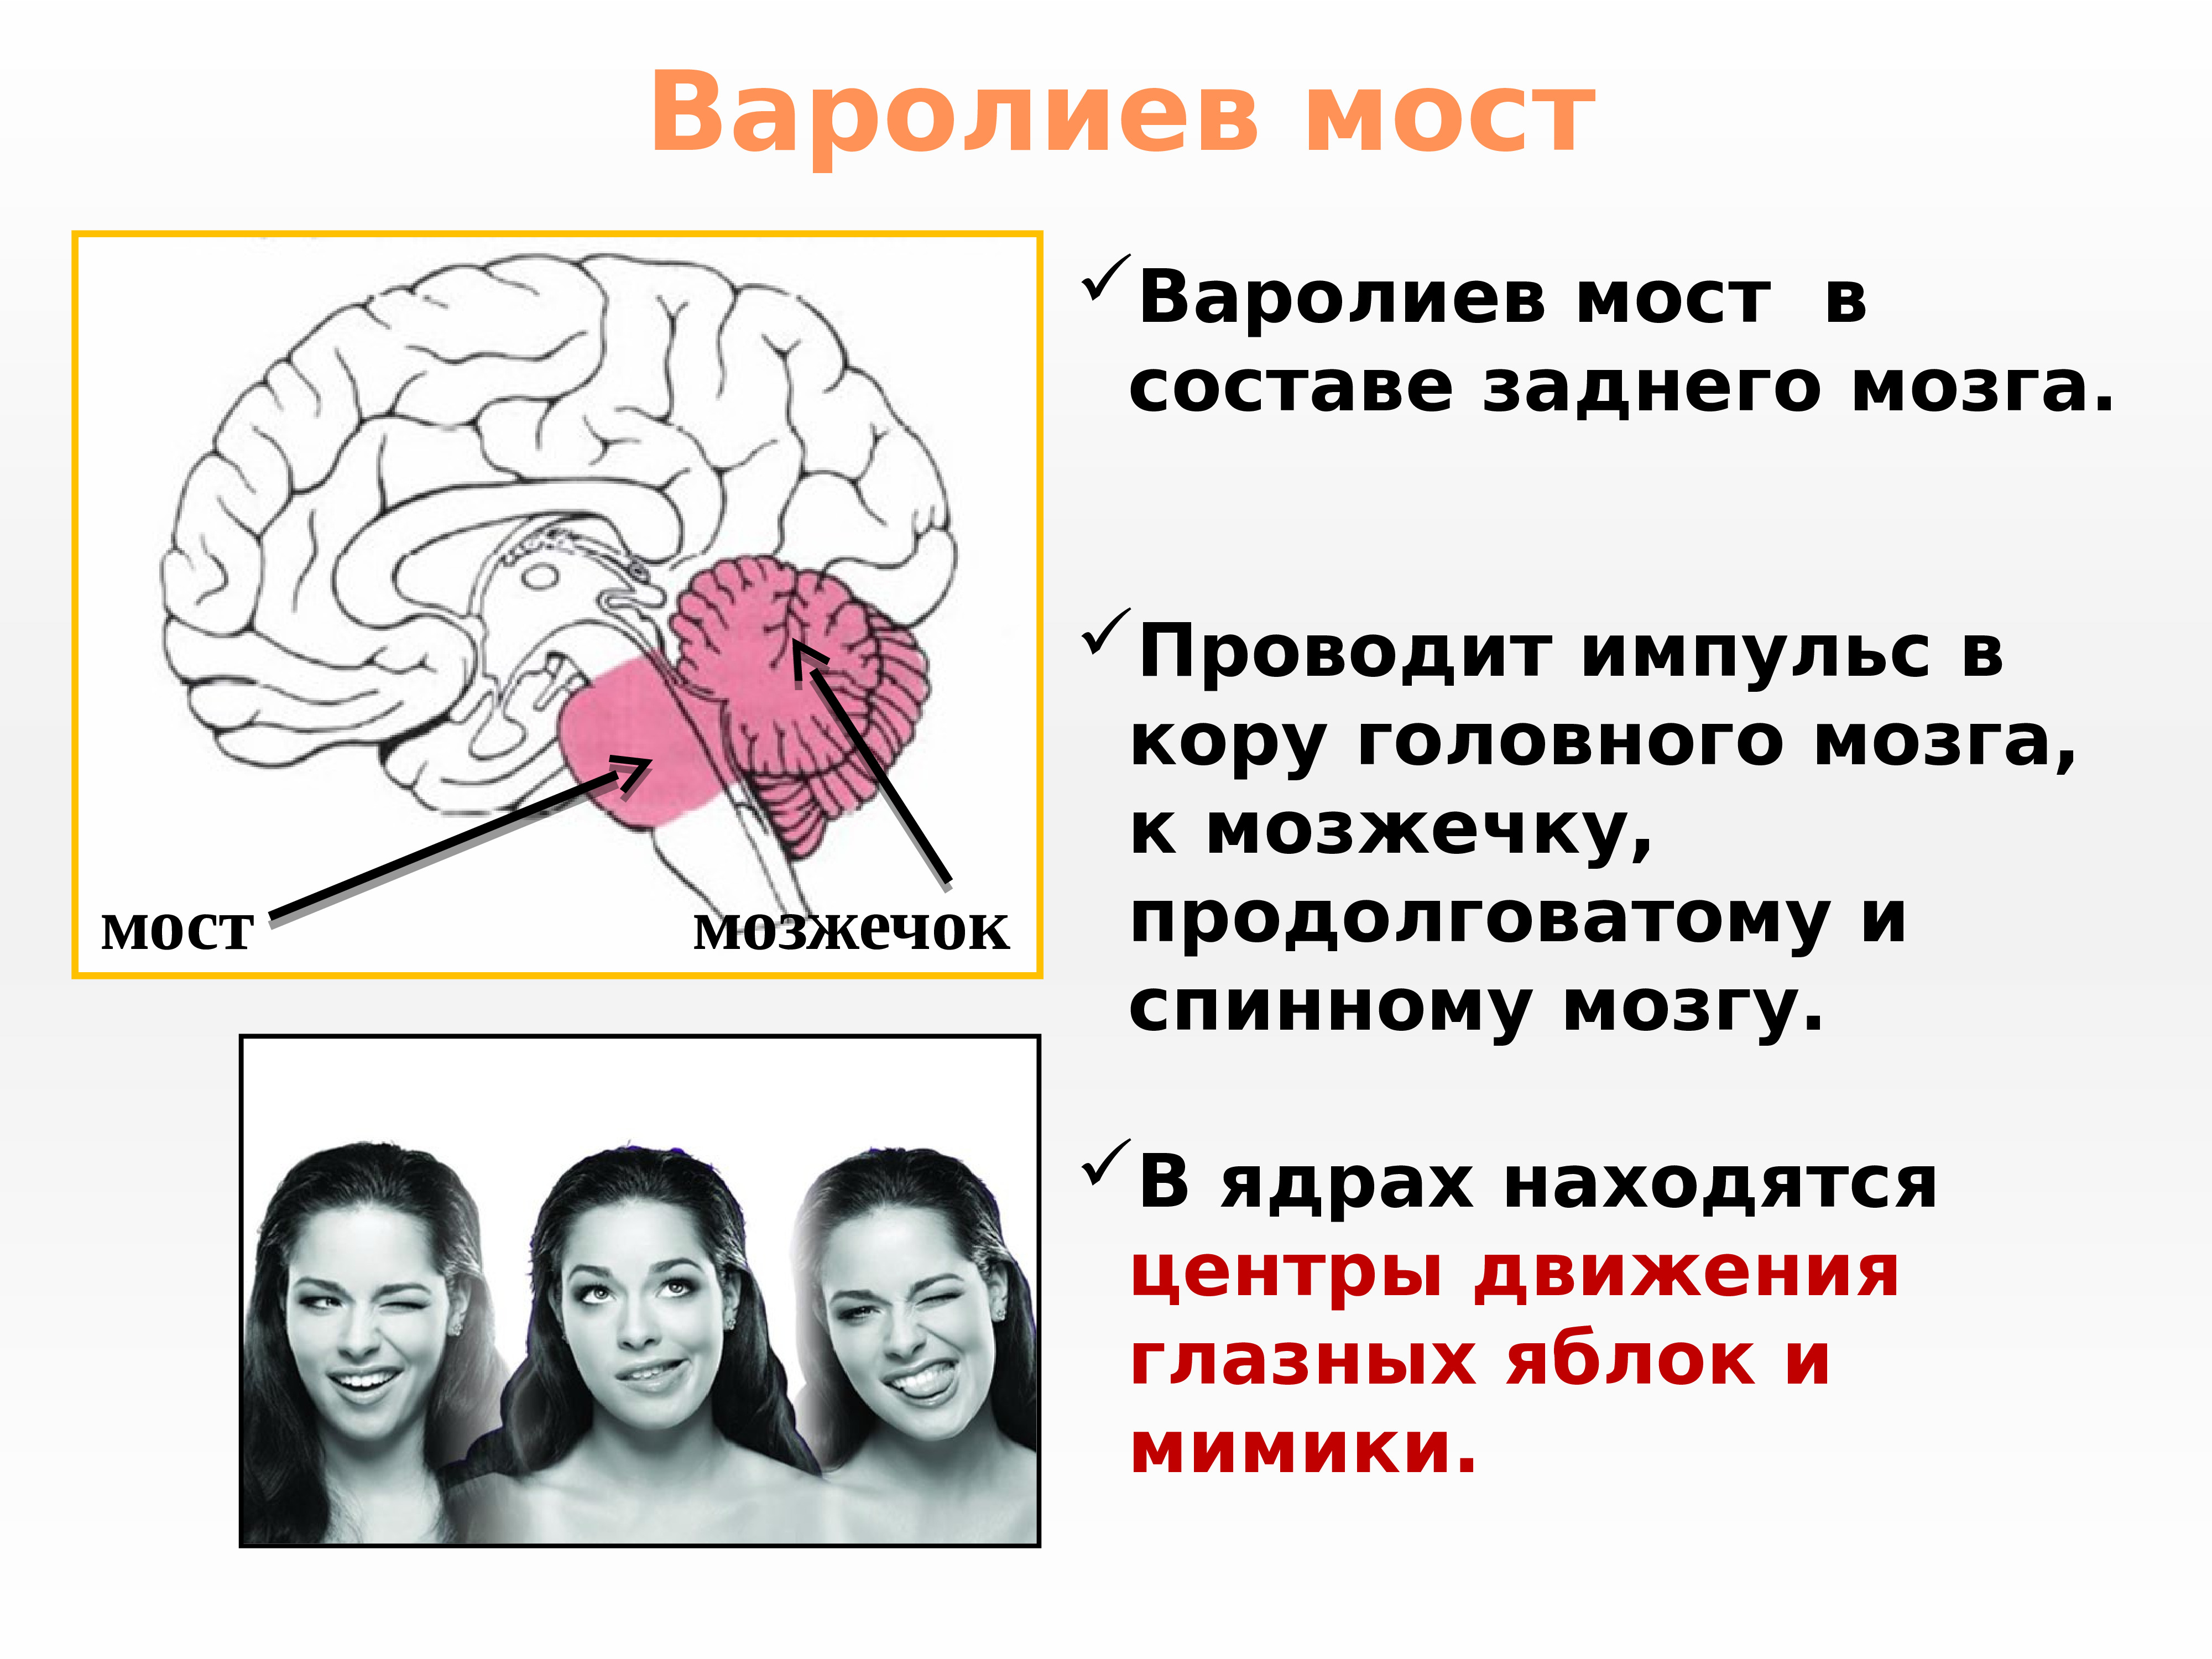 Варолиева моста головного мозга. Головной мозг варолиев мост. Строение мозга варолиев мост. Варолиев мост анатомия функции. Строение головного мозга человека варолиев мост.